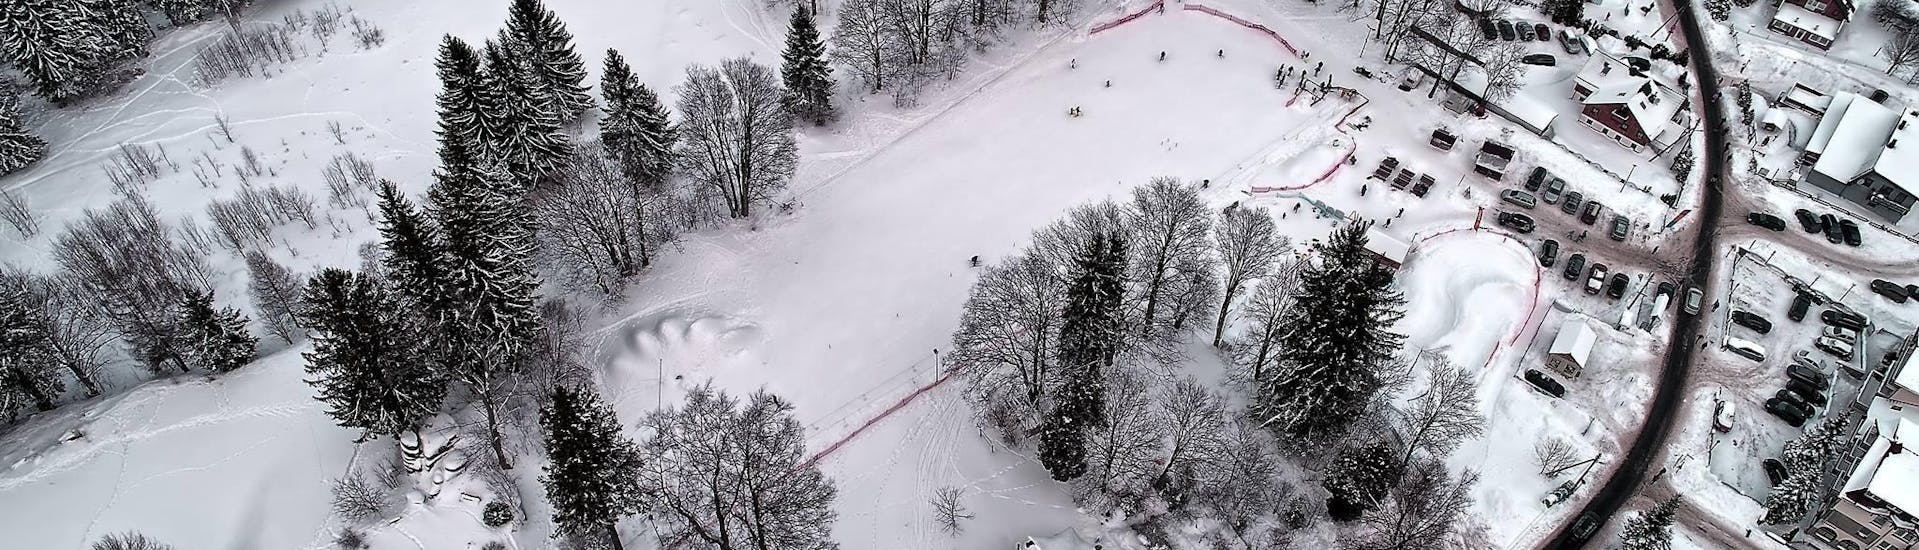 Skilessen voor kinderen - beginners.